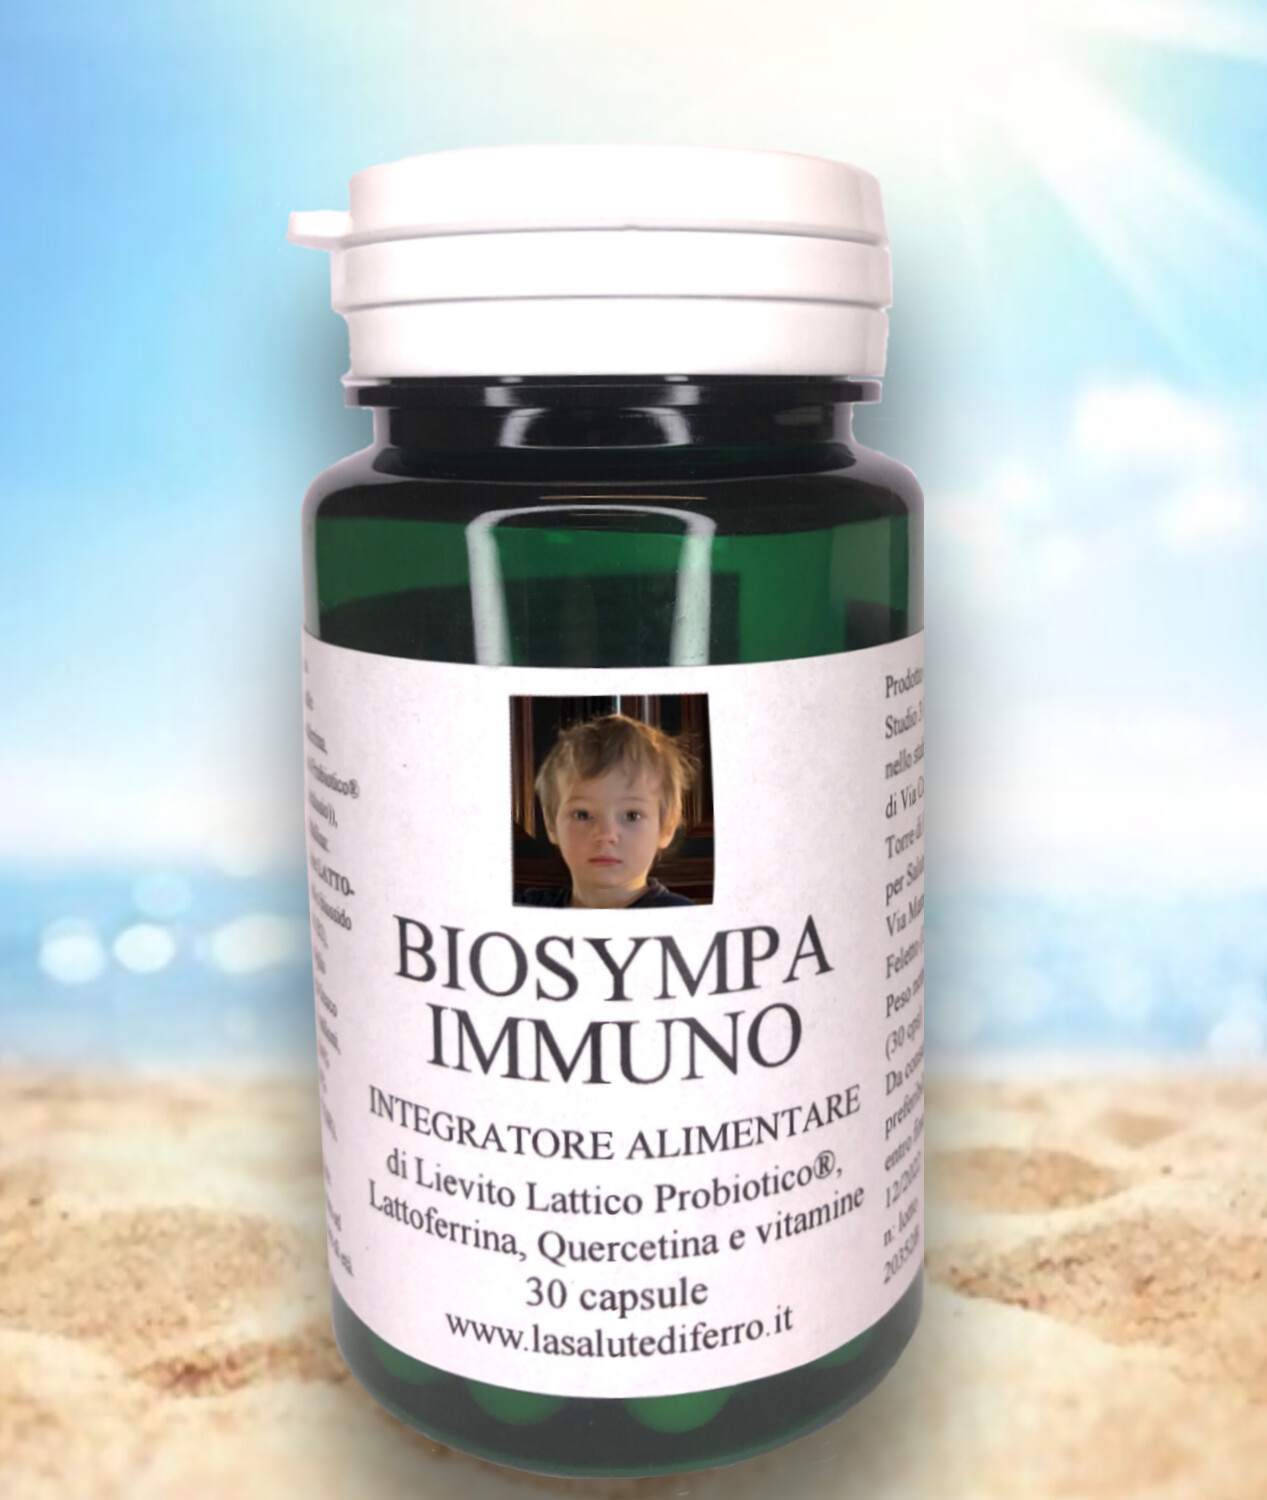 Biosympa Immuno